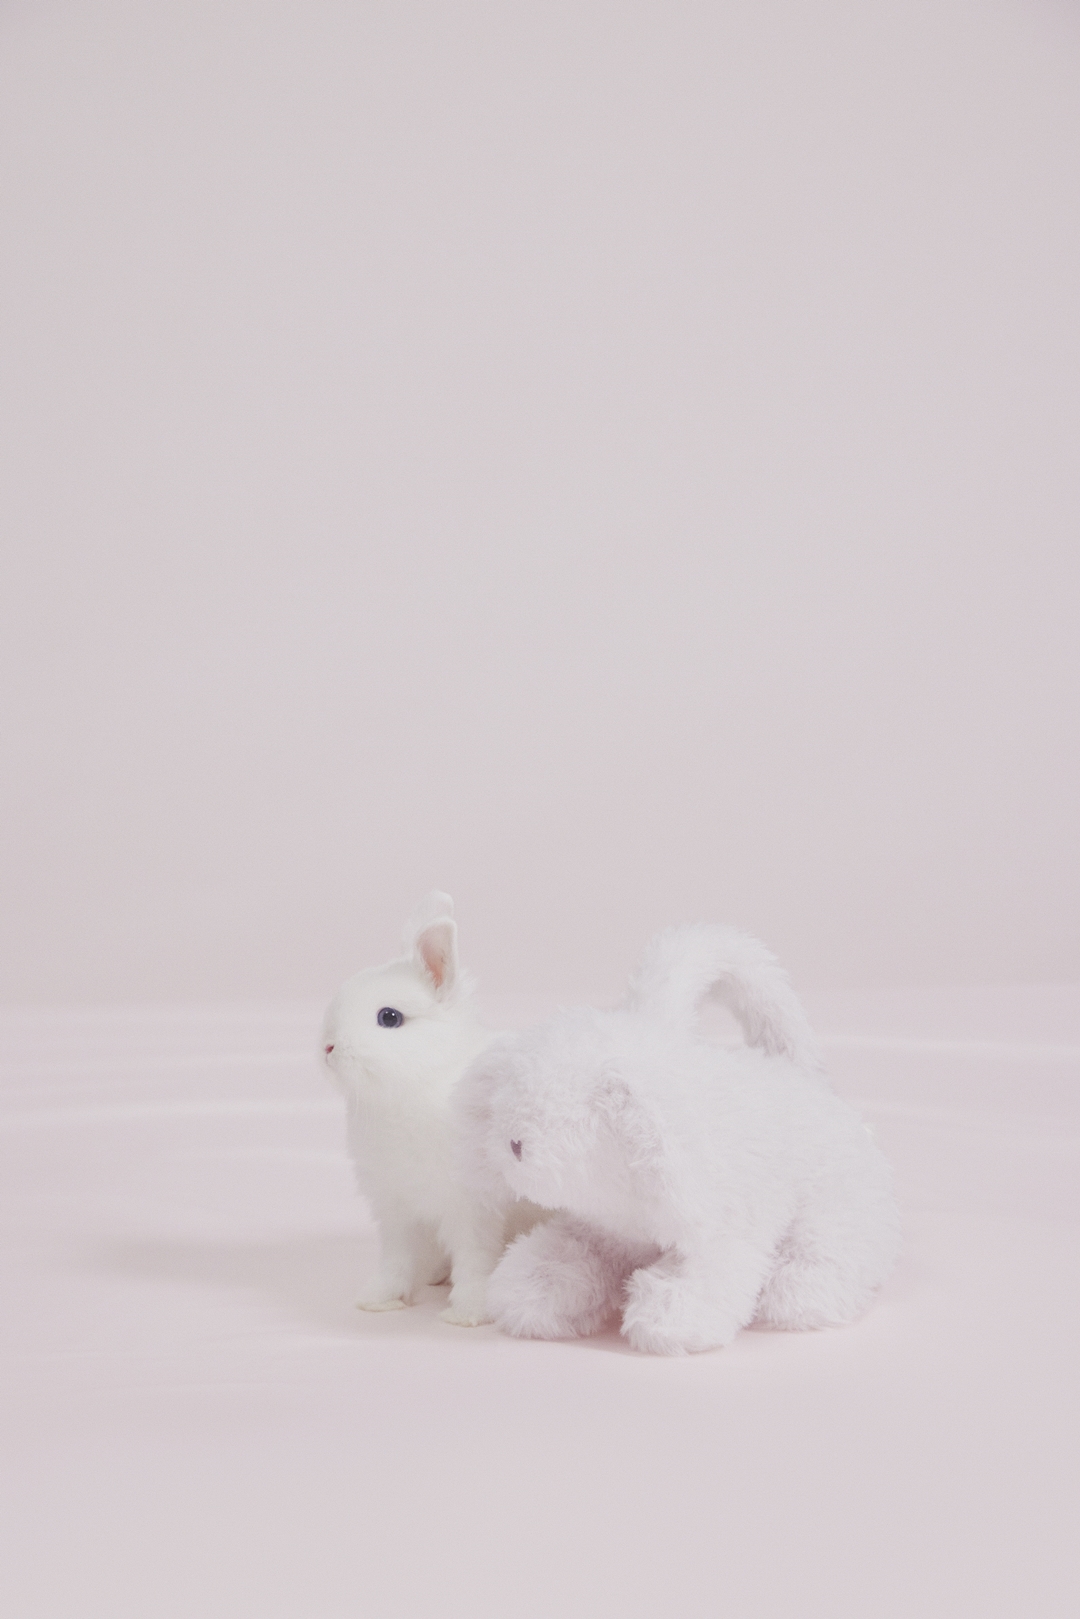 バニーがテーマのハロウィンコレクション「Bunny Collection」が「gelato pique/ジェラート ピケ」から10/4 発売 (Halloween)